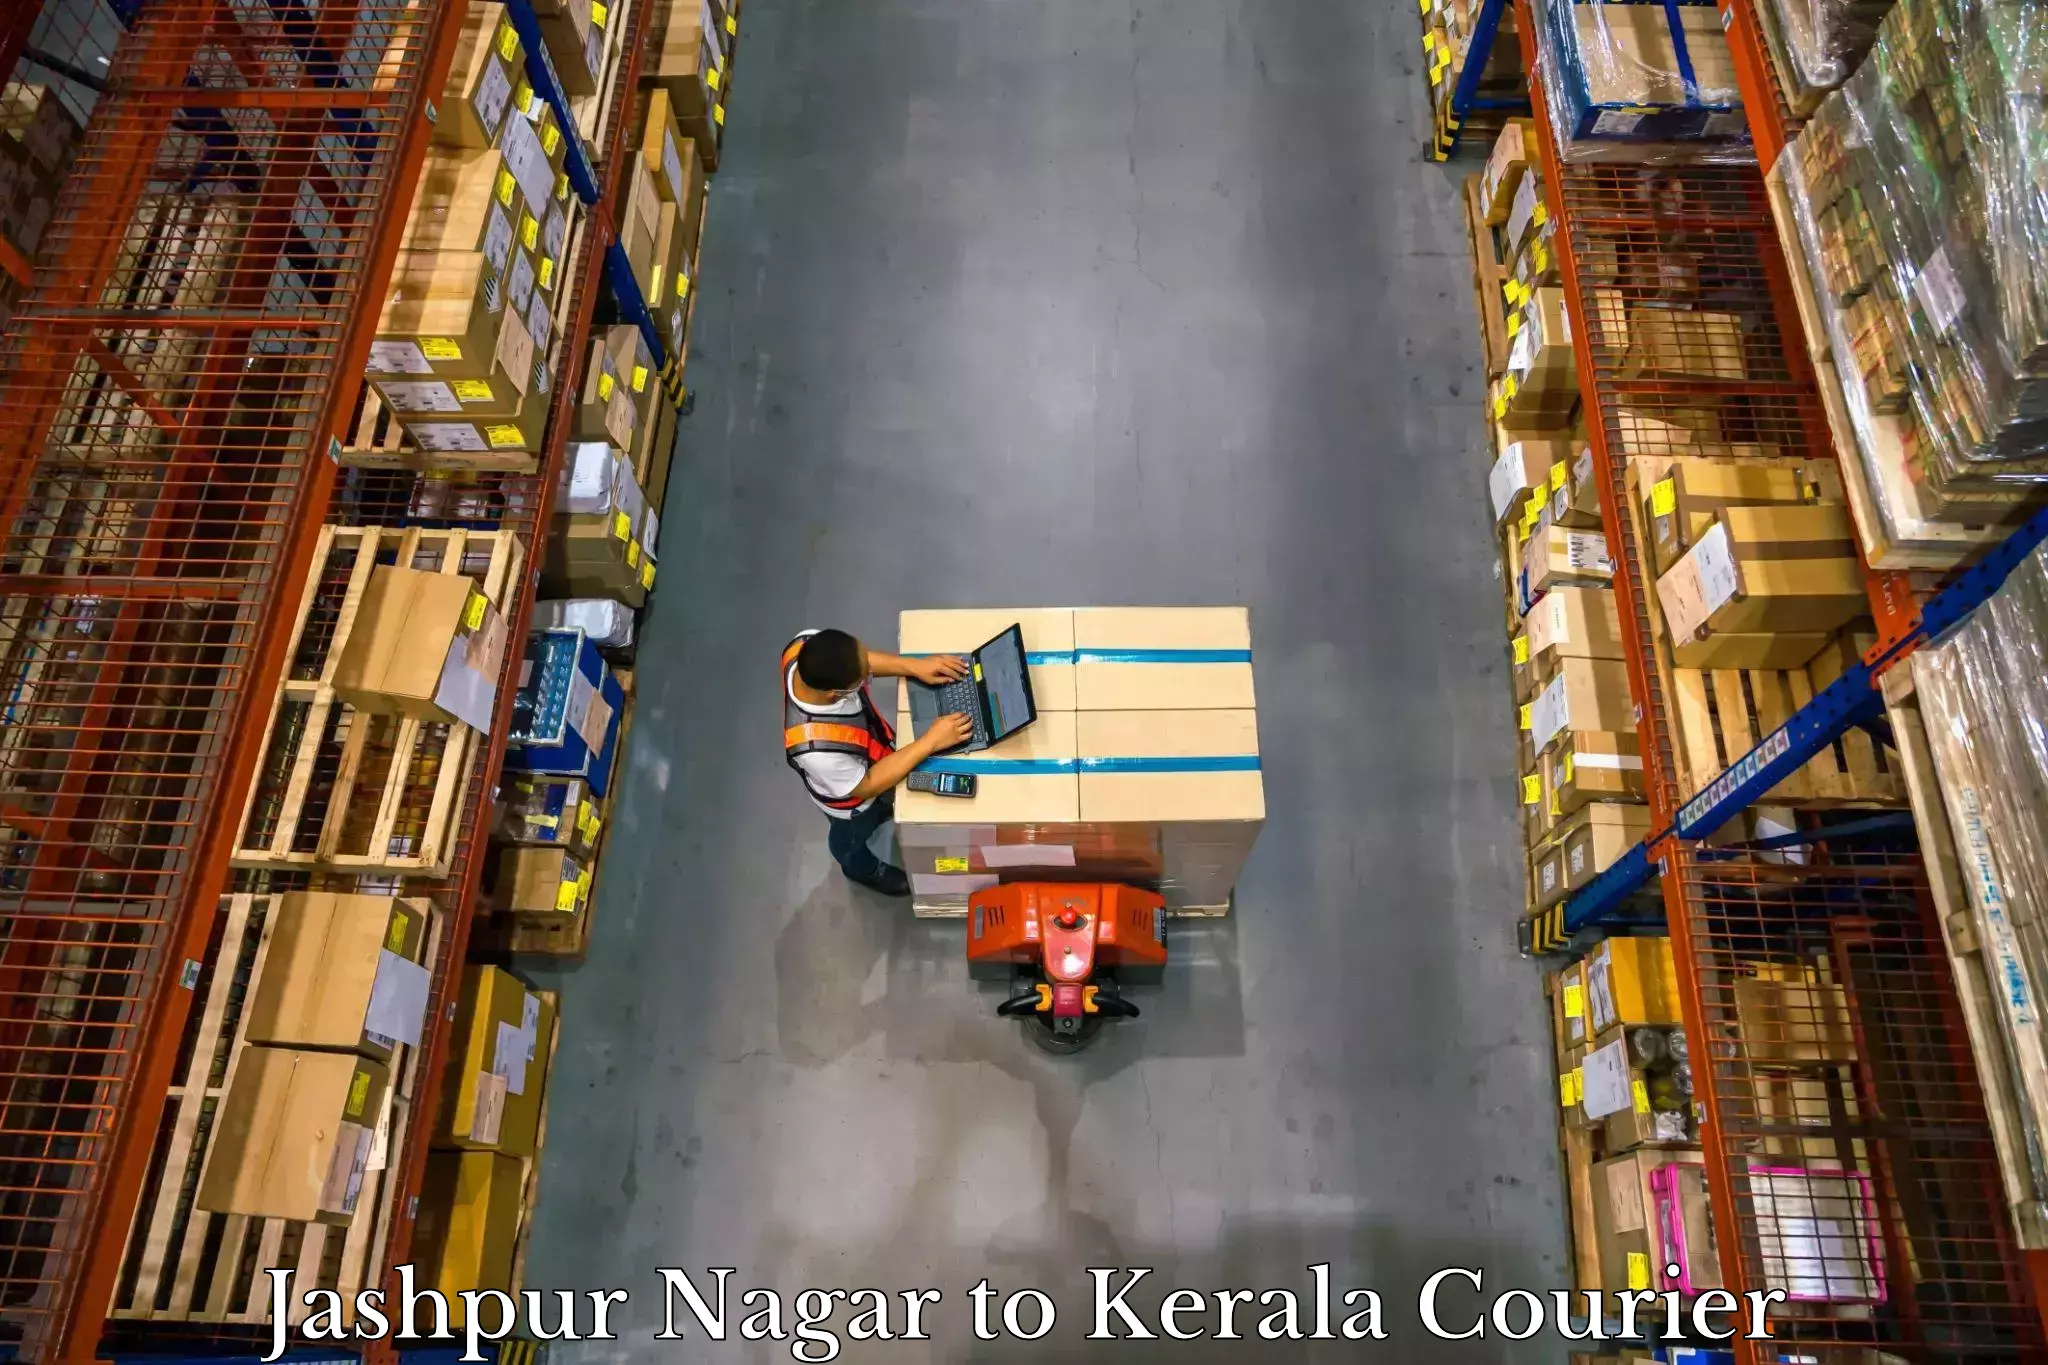 Baggage shipping experts Jashpur Nagar to Kuthiathode